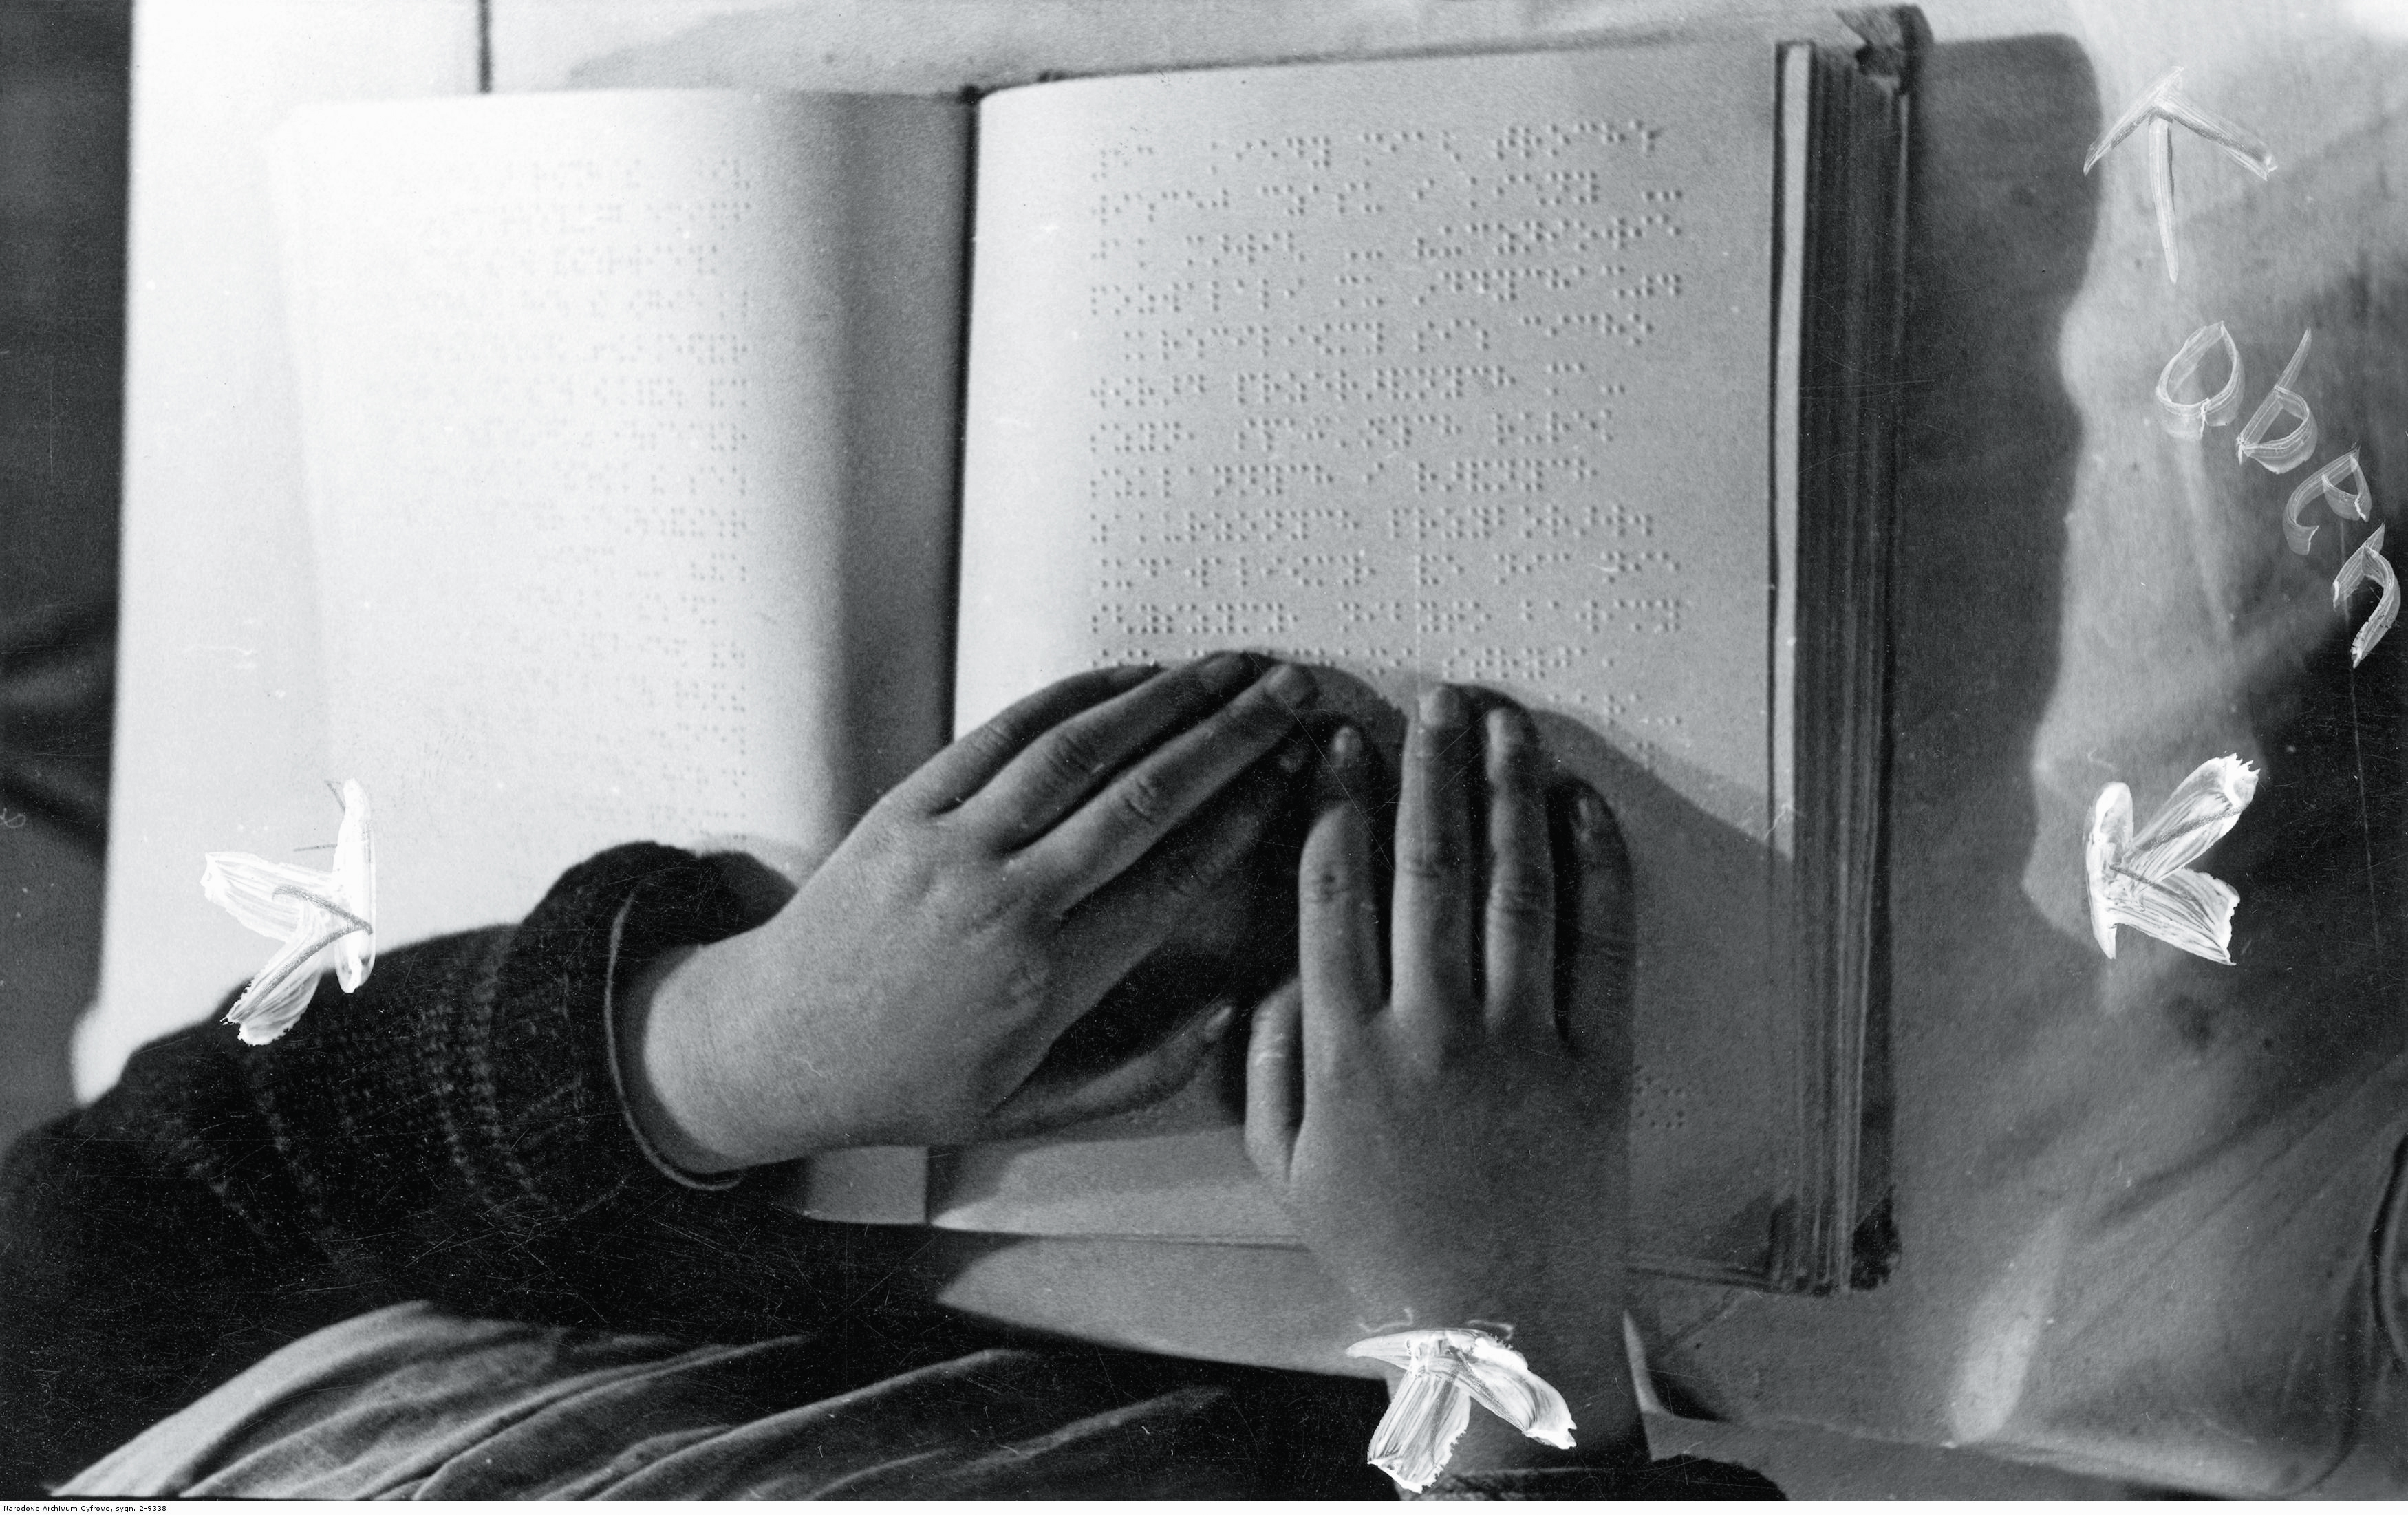 Czytanie książki zadrukowanej alfabetem Braille’a, Laski, 1941 r.